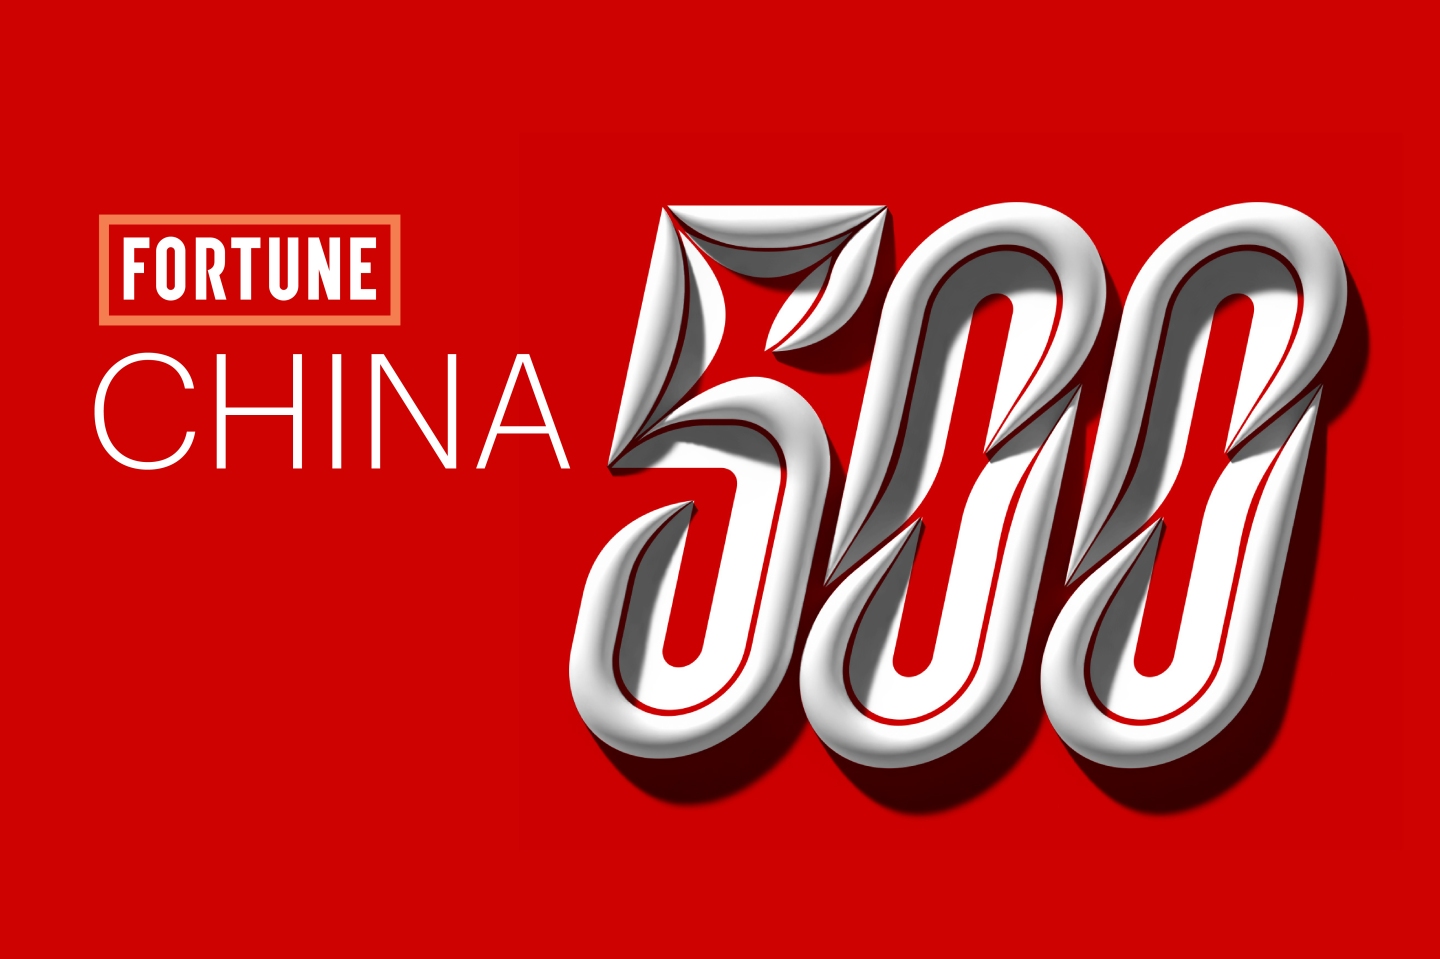 Fortune China 500 logo